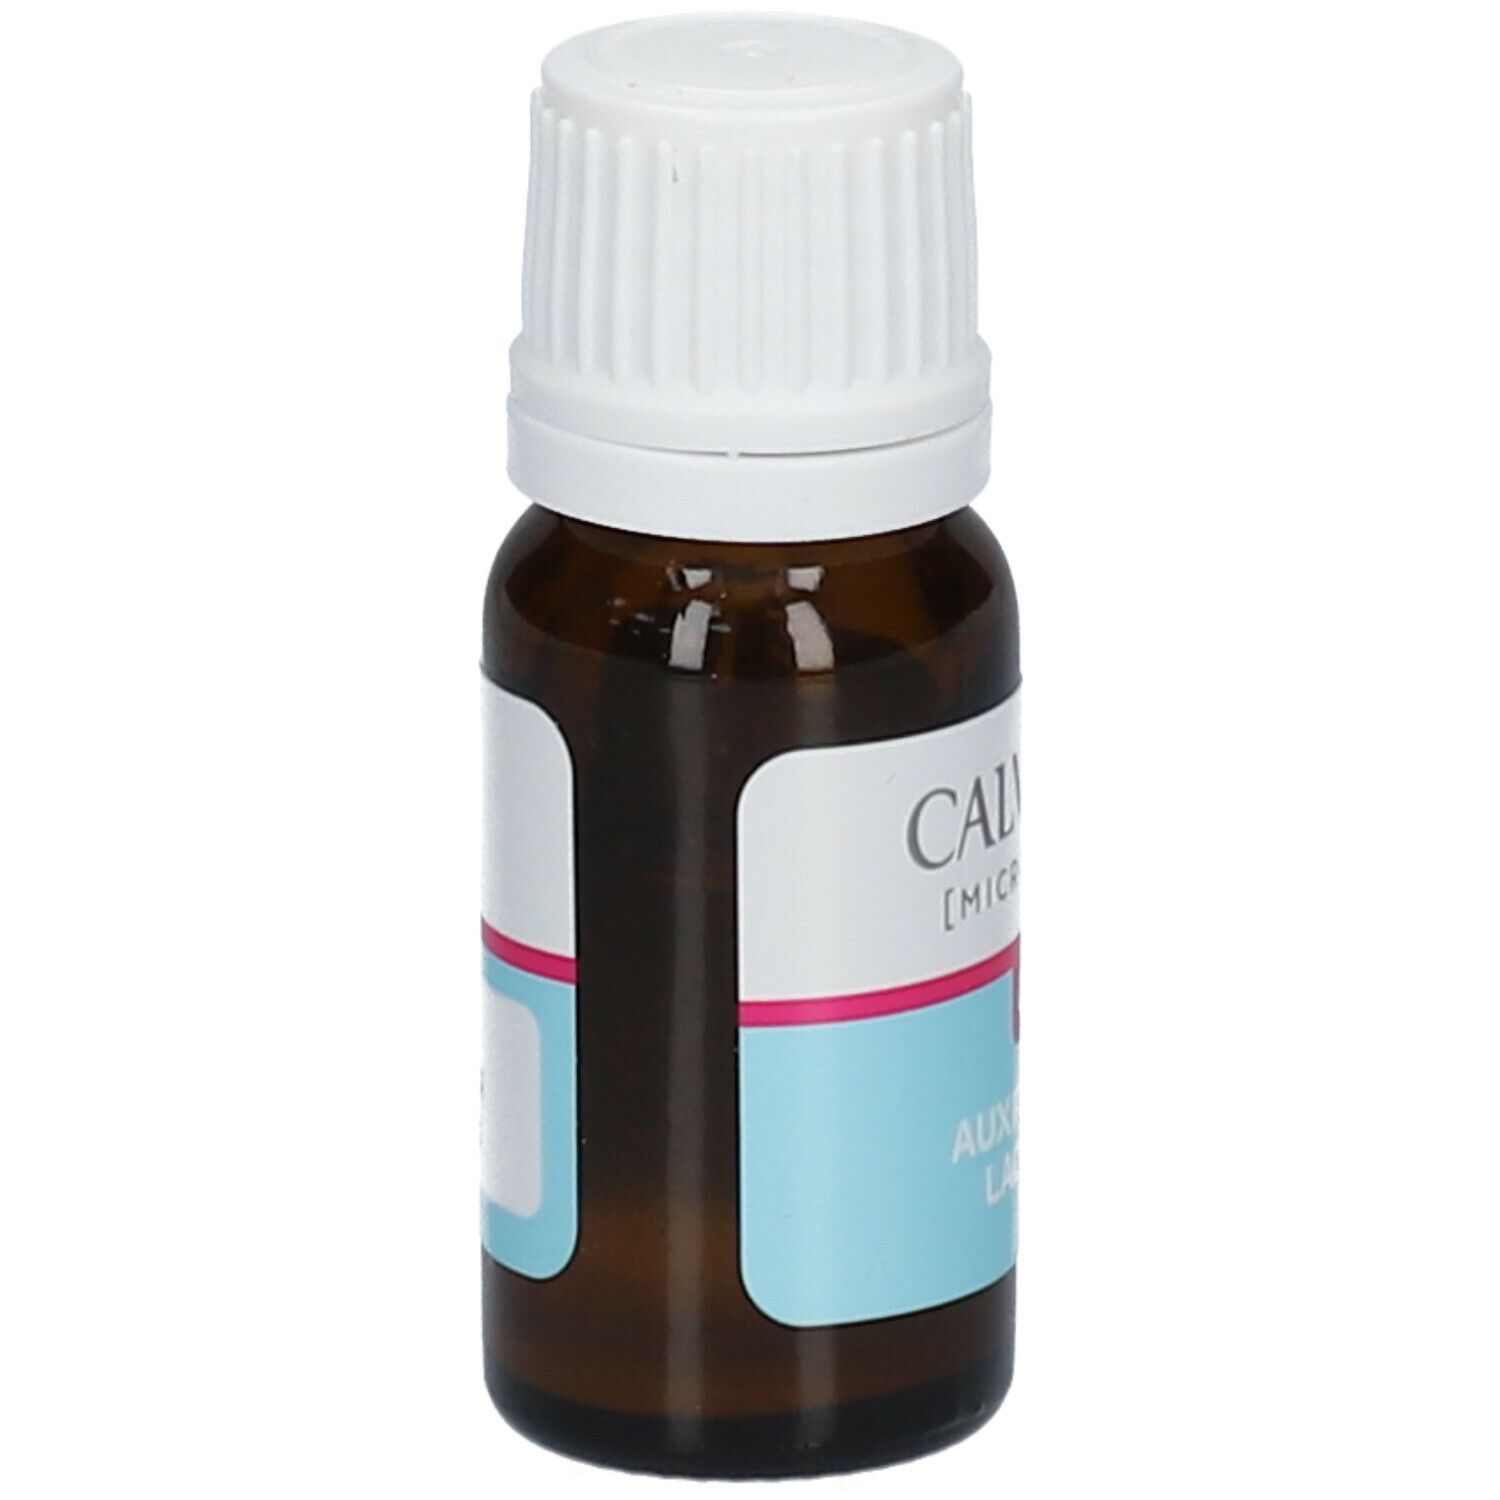 Calmosine Microbiotique CLQ 8ml